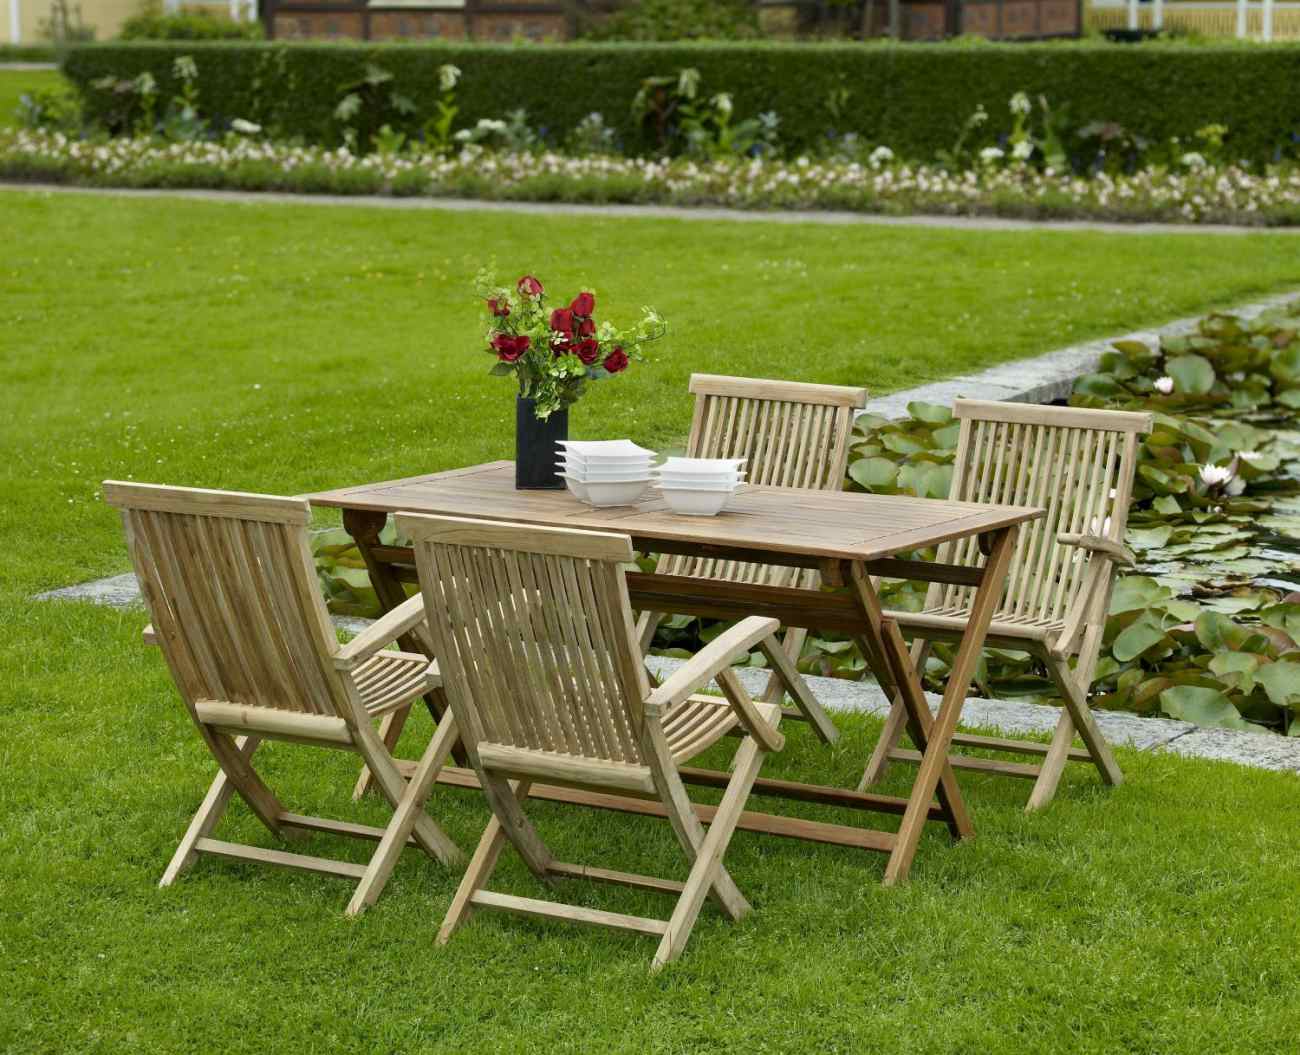 Der Gartenesstisch Turin überzeugt mit seinem modernen Design. Gefertigt wurde die Tischplatte aus Teakholz und hat einen natürlichen Farbton. Das Gestell ist auch aus Teakholz und hat eine natürliche Farbe. Der Tisch besitzt eine Länge von 140 cm.